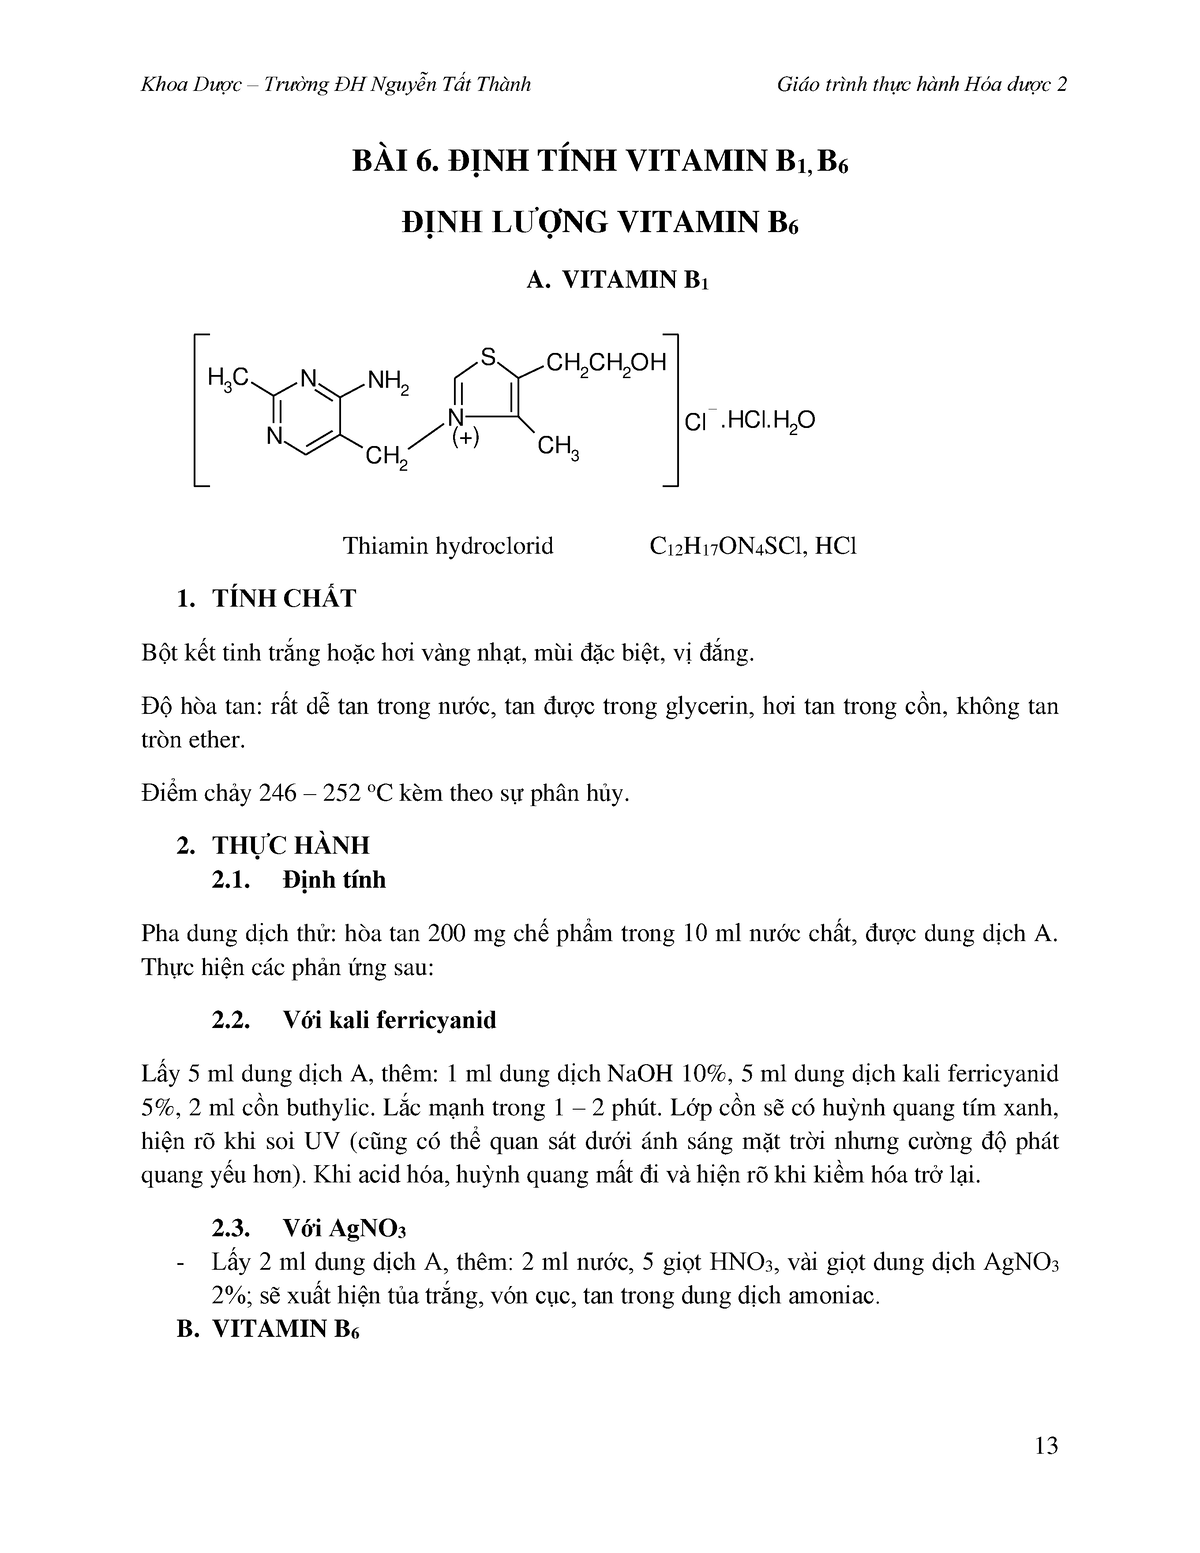 Thông tin định tính vitamin b6 về định tính vitamin b6 trong kiểm định